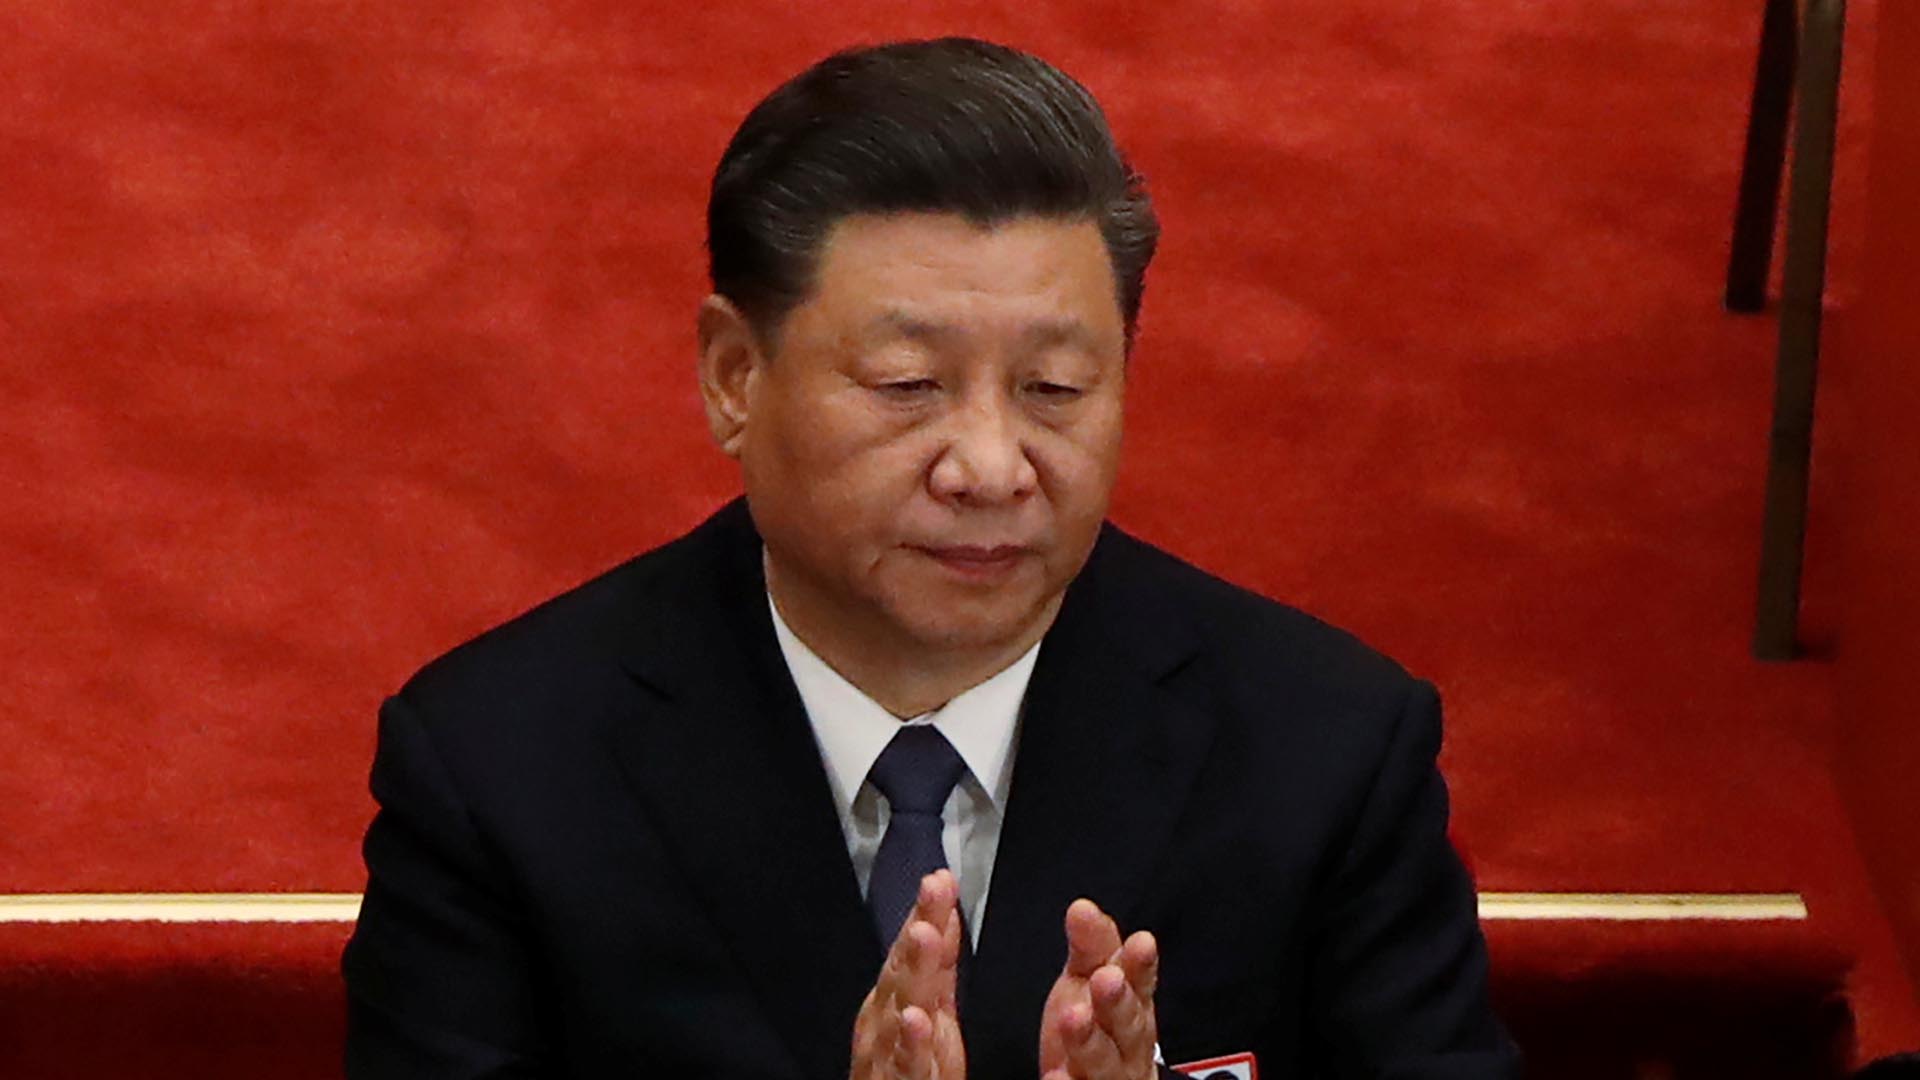 EEUU considera al régimen chino como una "grave amenaza" para las democracias occidentales (REUTERS/Carlos Garcia Rawlins)